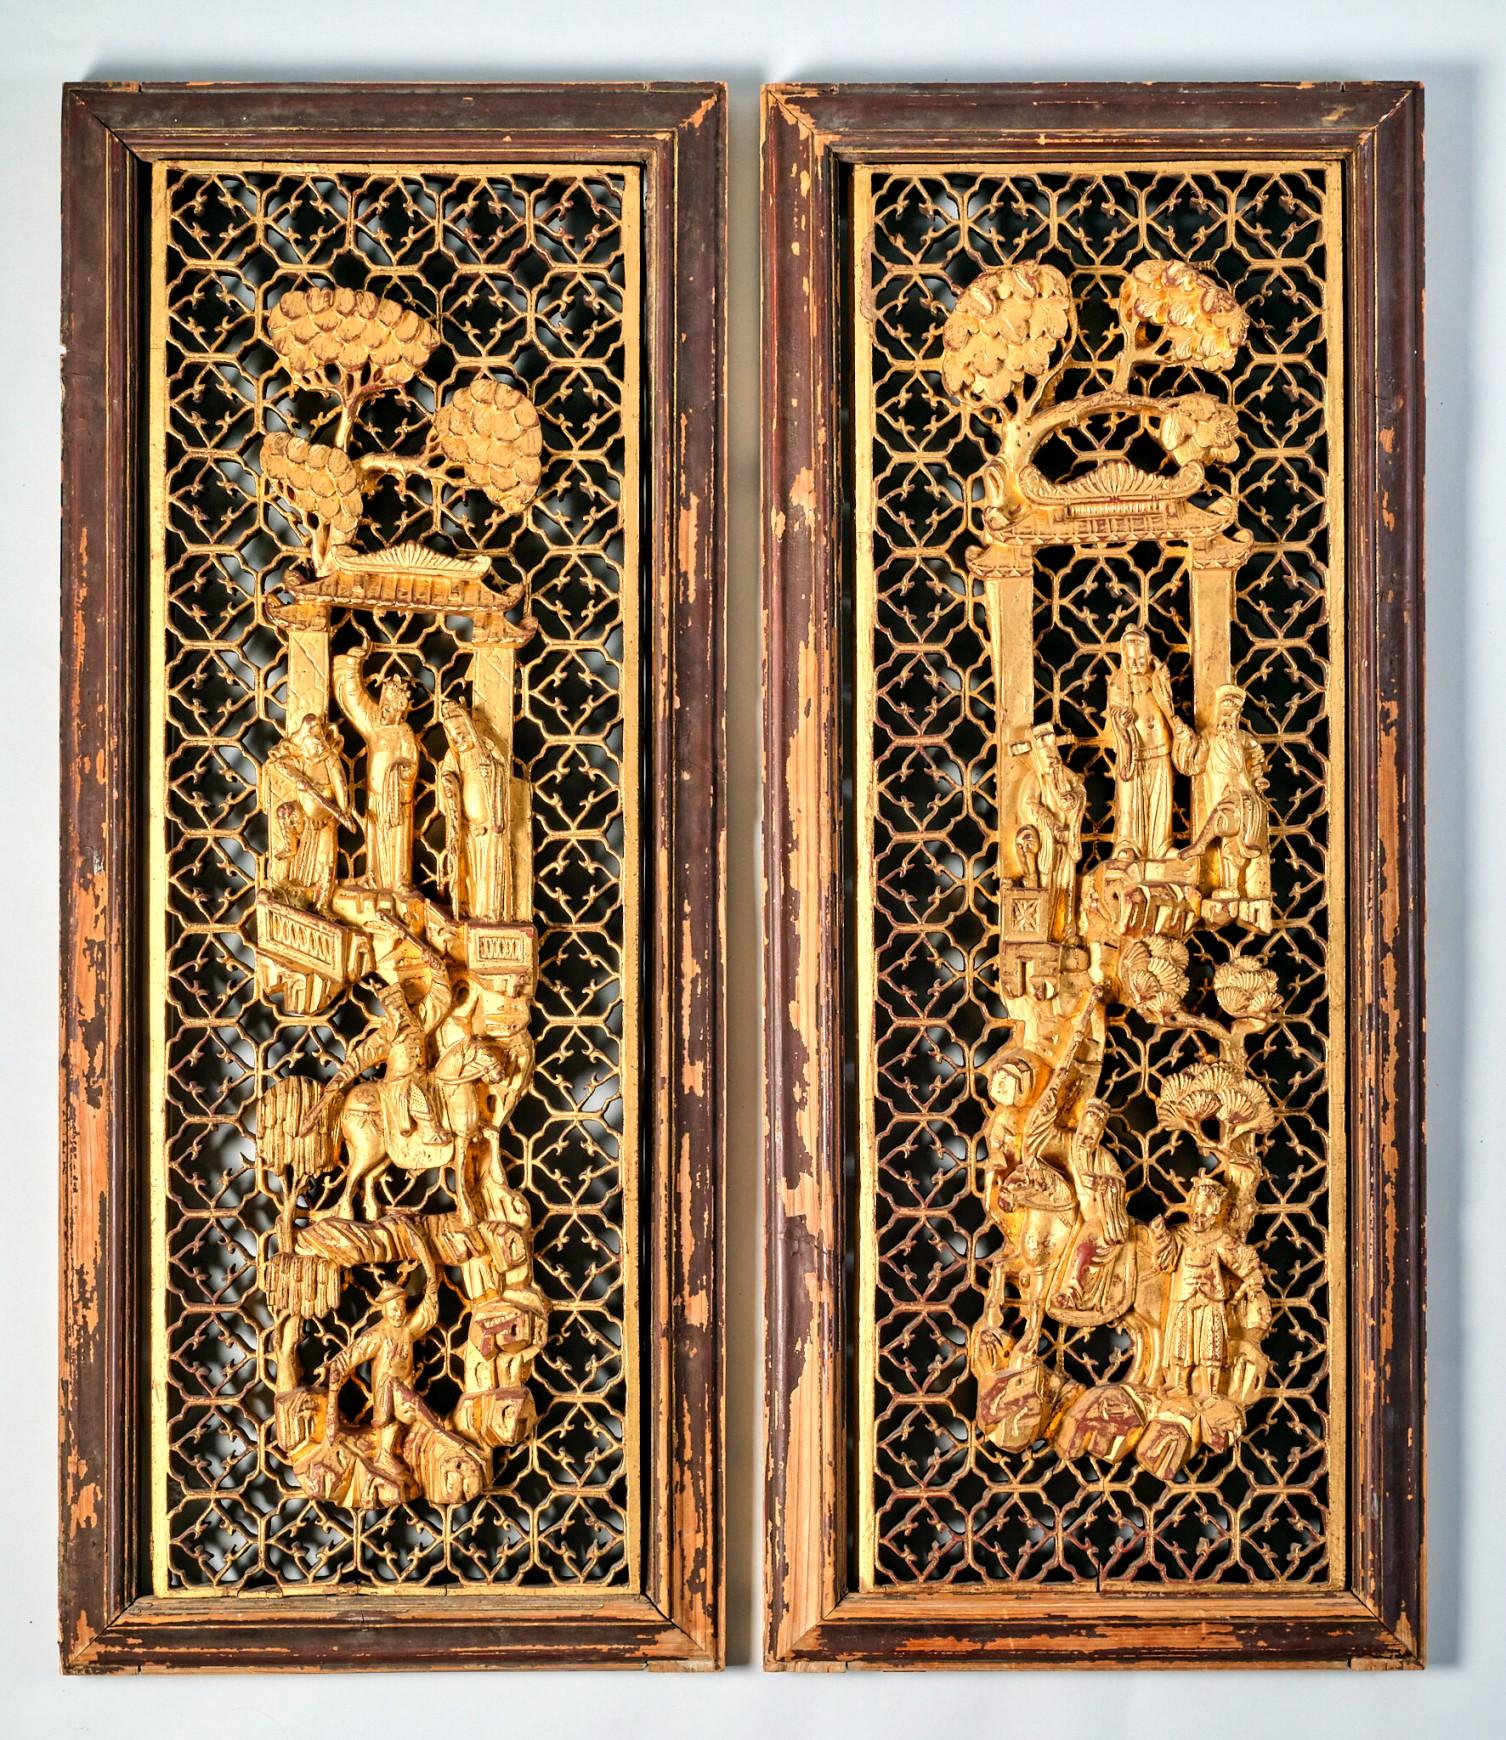 Ein außergewöhnliches und sehr dekoratives Paar antiker, handgeschnitzter Chaozhou-Vergoldungstafeln, die beide fein ausgeführte, reliefgeschnitzte und vergoldete Vignetten zeigen, die in einem terrassenförmigen Format angeordnet sind und gelehrte